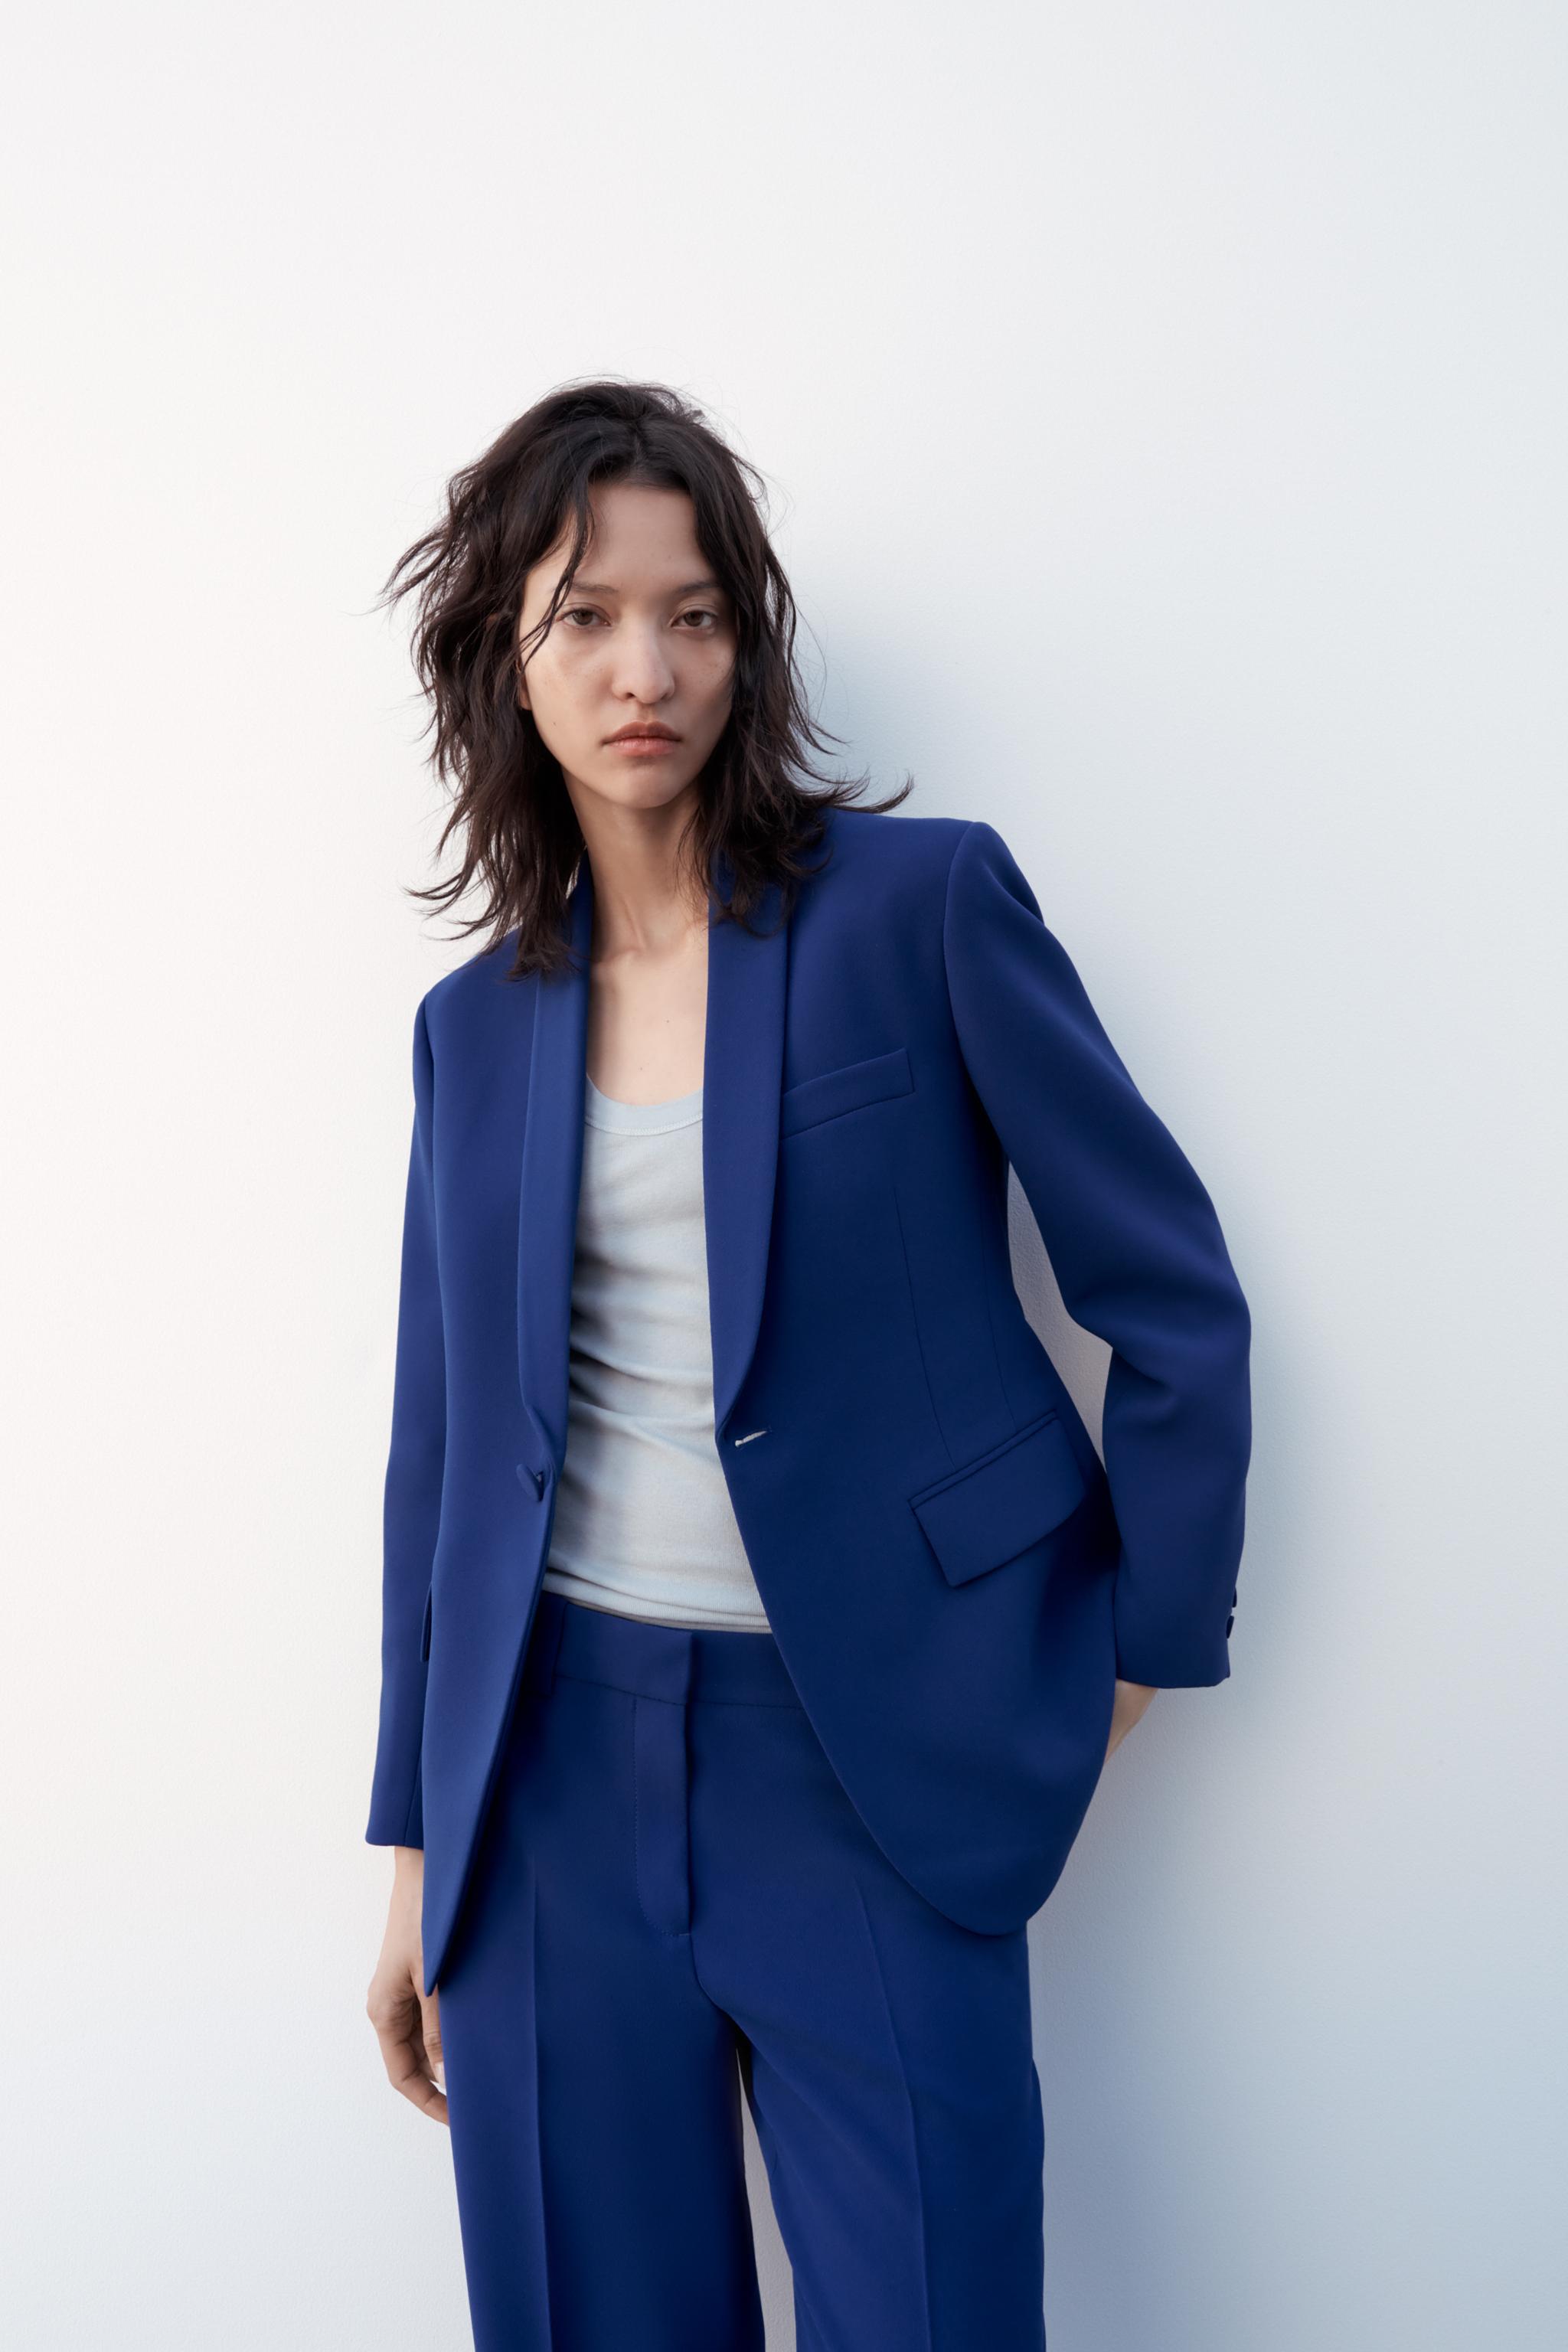 Women's Suit Sets & Tailoring - Blazer Sets, Suit Seperates - Lulus